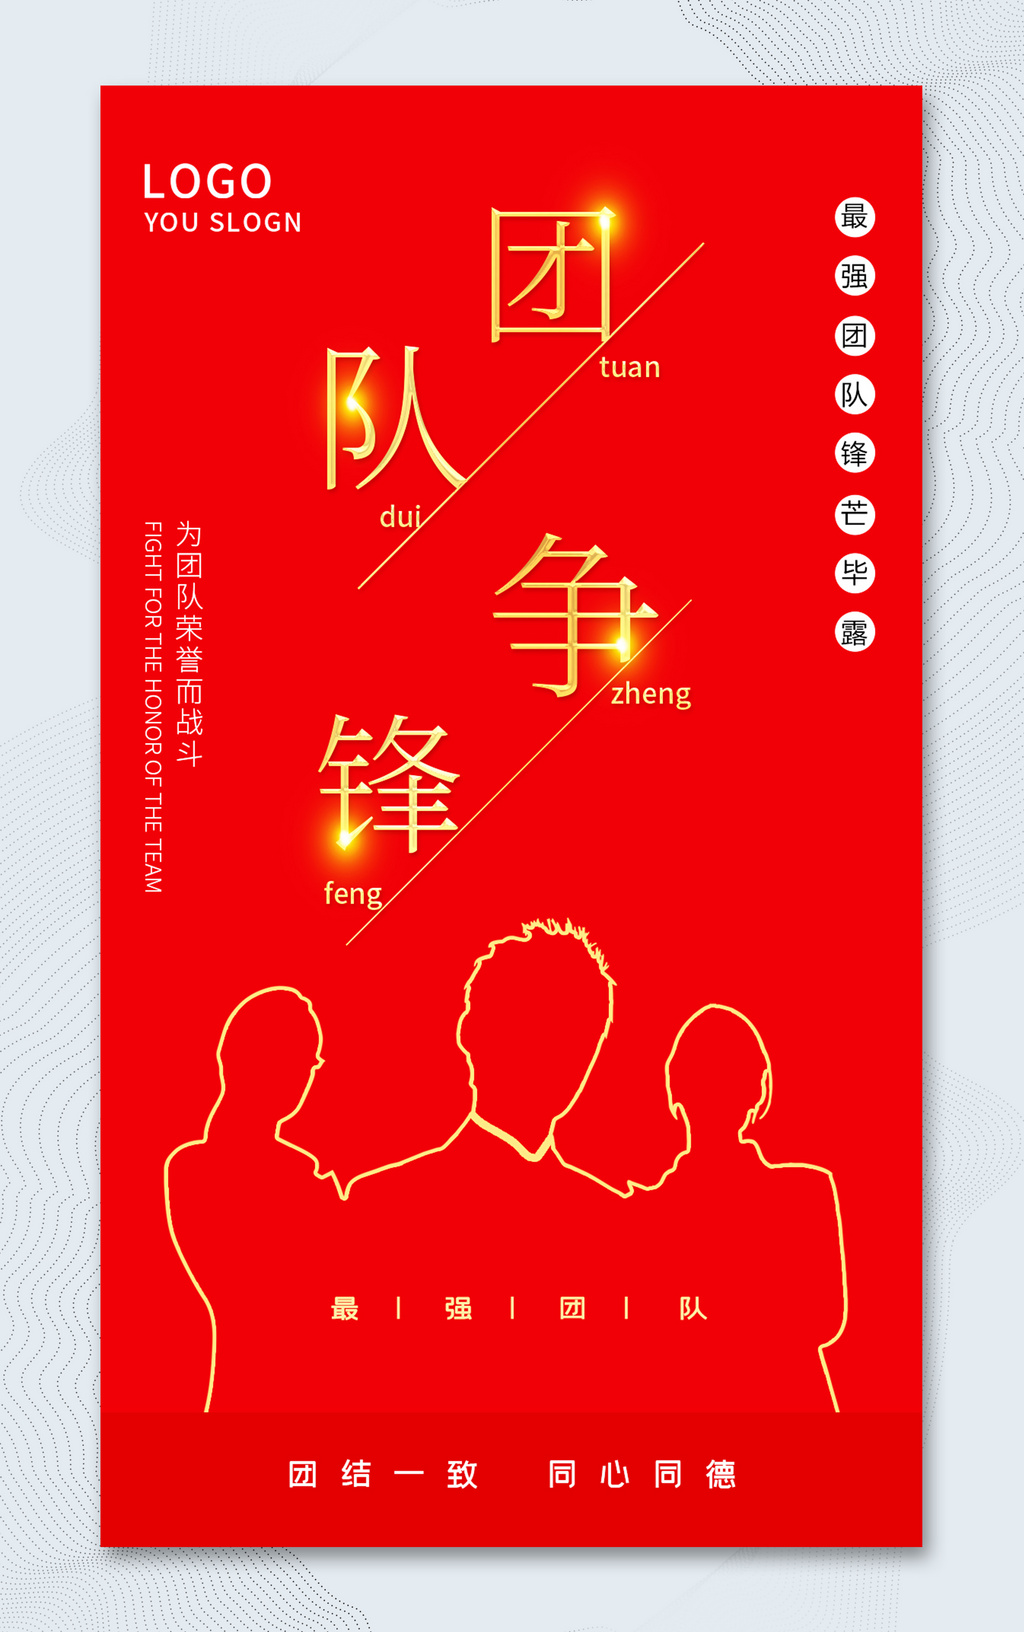 红色简约团队争锋团队PK宣传海报